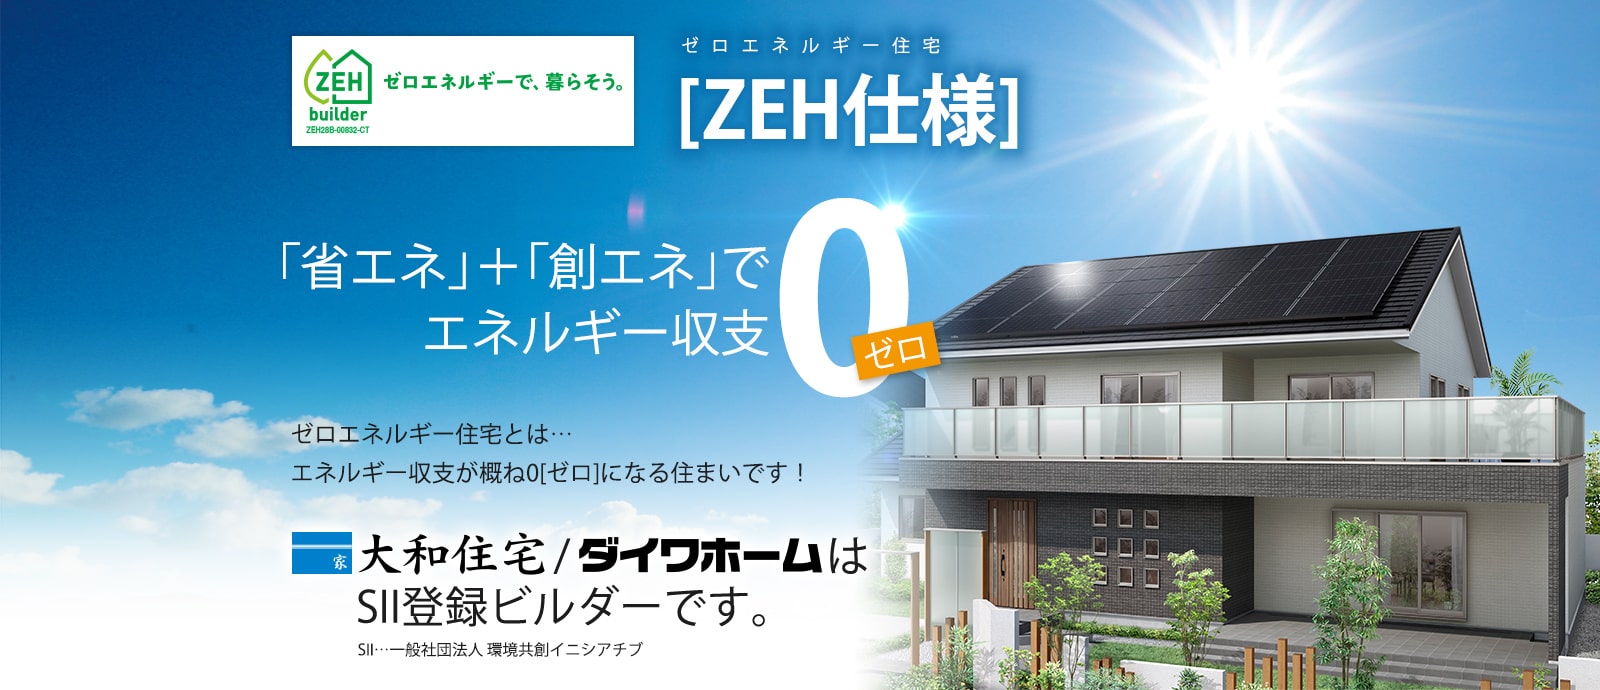 ゼロエネルギー住宅［ZEH仕様］「省エネ」＋「創エネ」でエネルギー収支0 ゼロエネルギー住宅とは・・・エネルギー収支が概ね0になる住まいです！ダイワホームはSII登録ビルダーです。